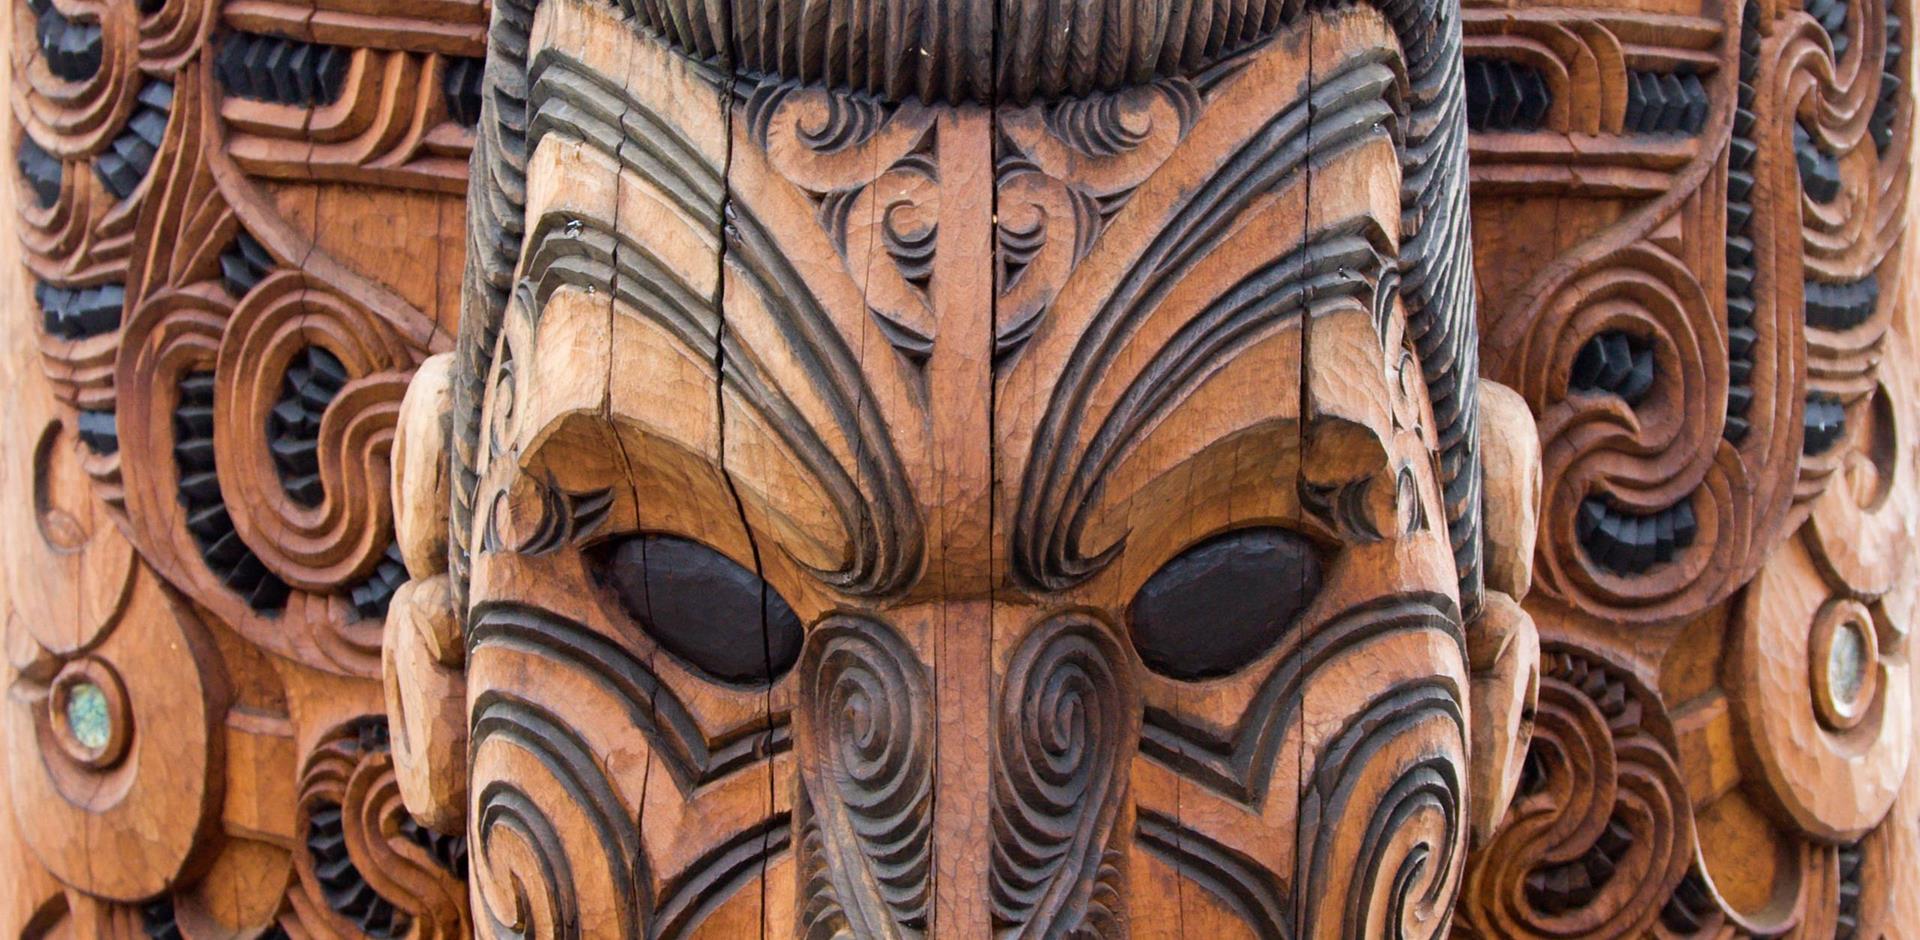 Maori carving, Rotorua, New Zealand